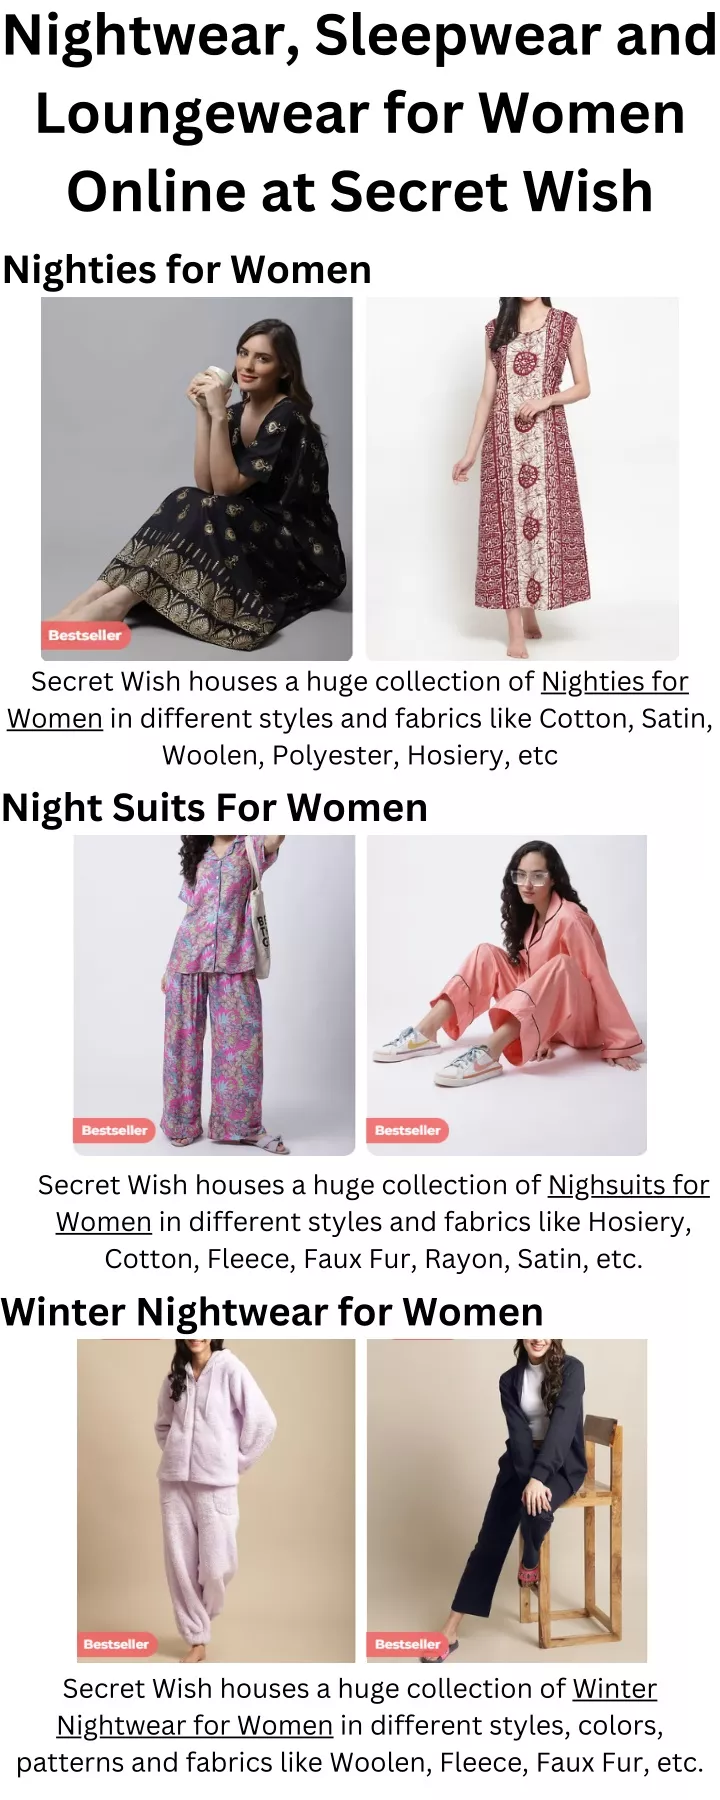 nightwear sleepwear and loungewear for women